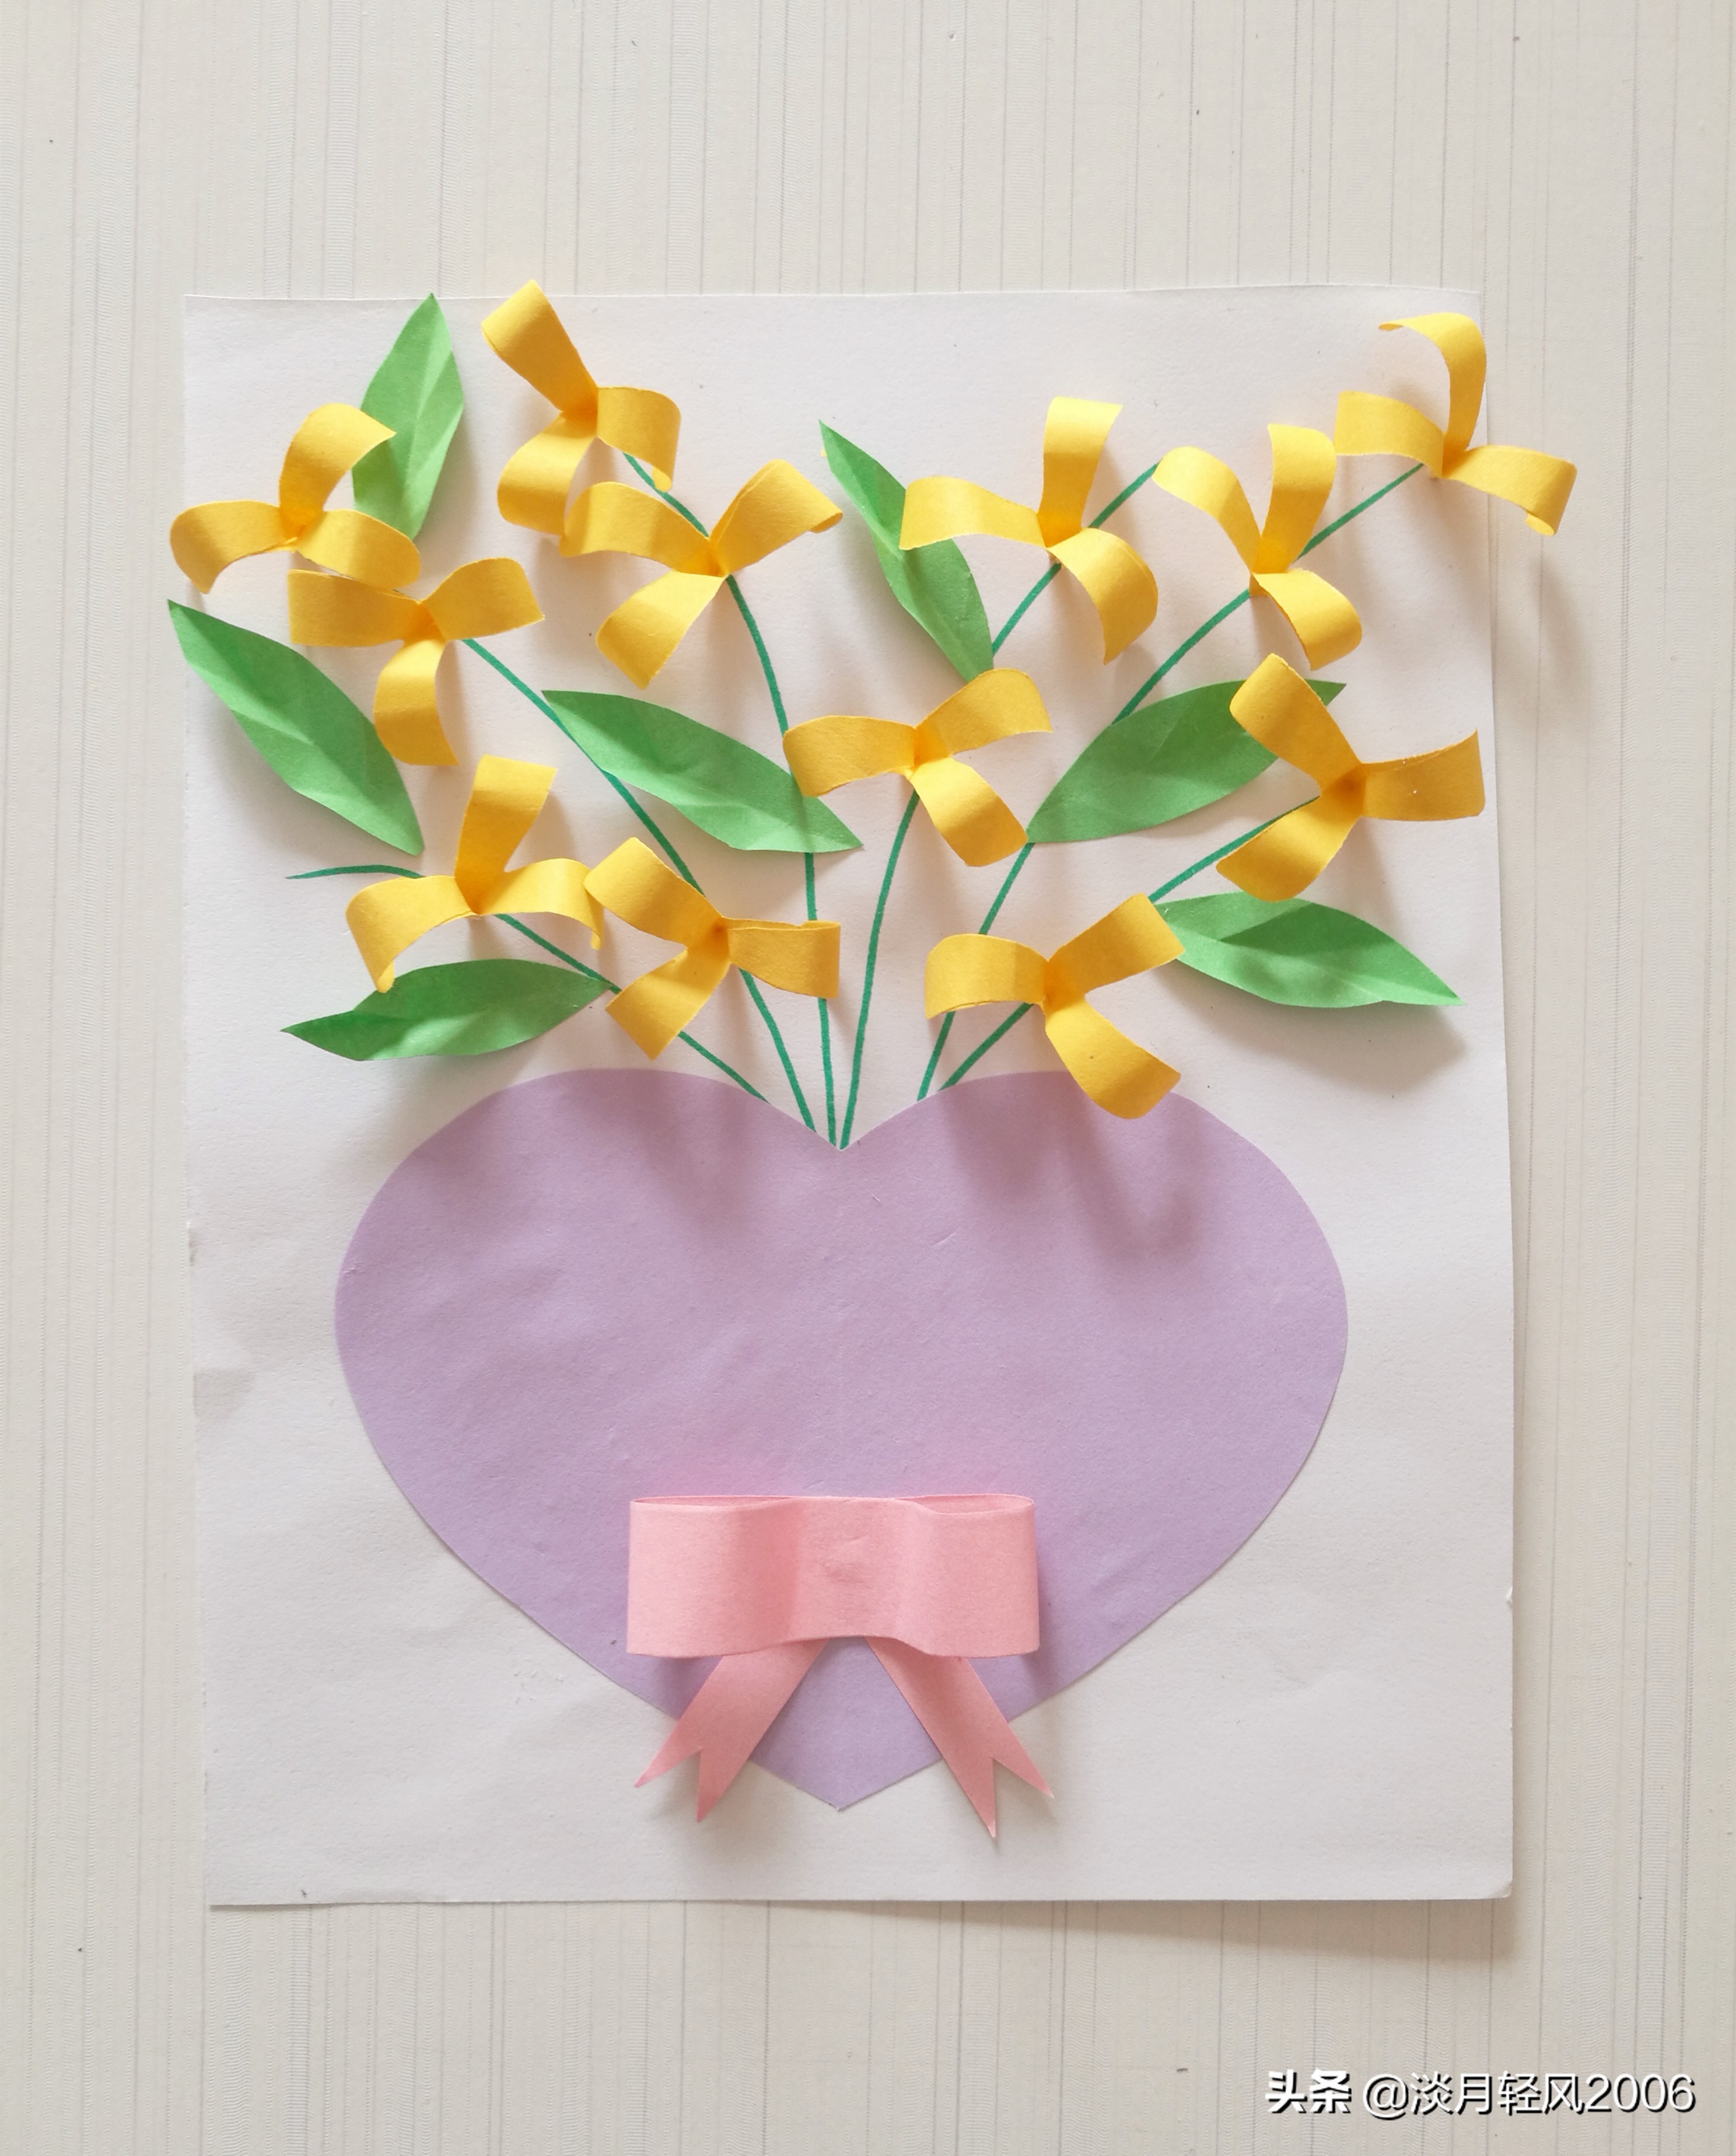 幼儿园的贺卡怎么做幼儿园手工自己动手用卡纸做清新小花爱心贺卡可以